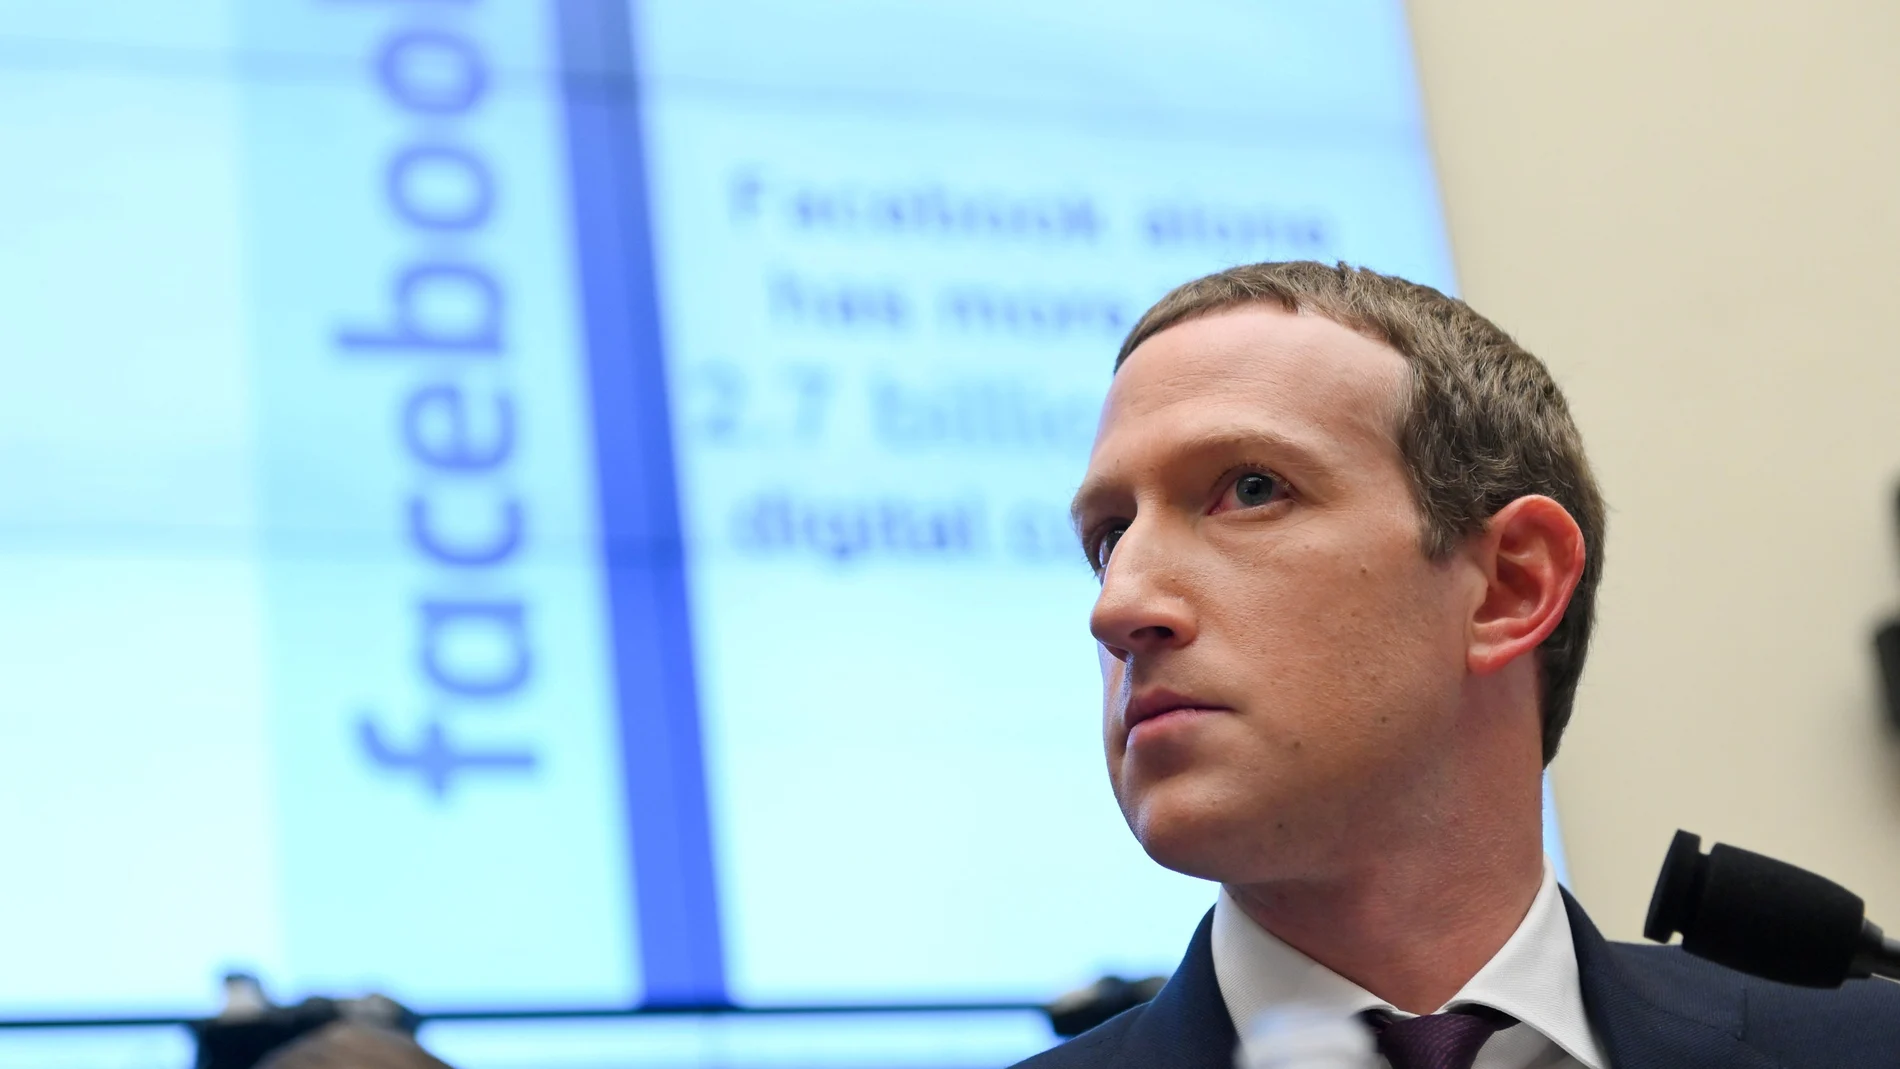 Zuckerberg se ve señalado en un libro que aborda los 5 años más turbulentos de Facebook